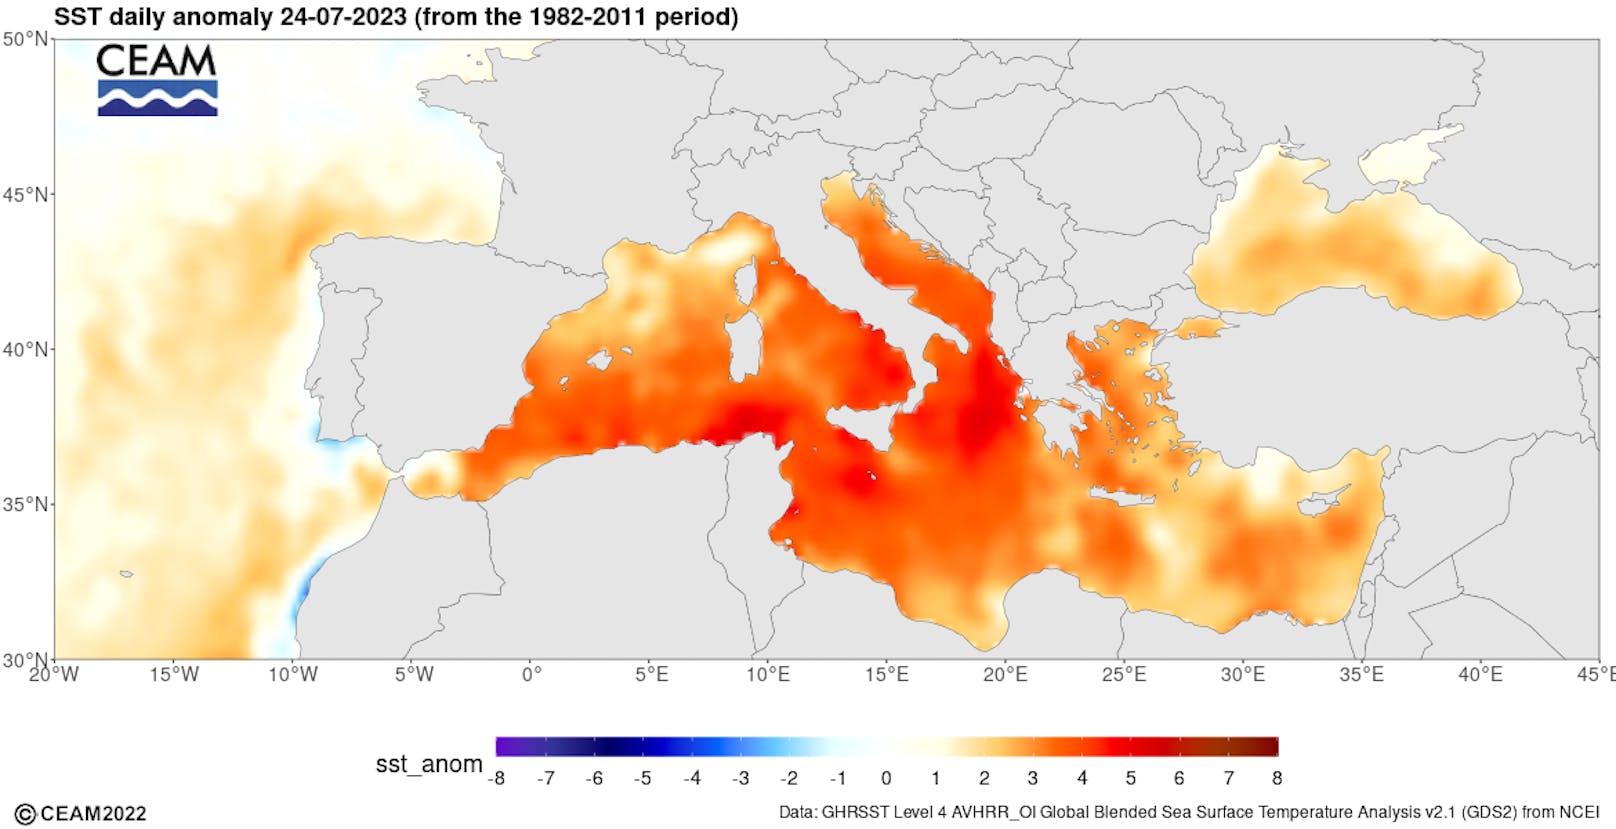 Die Abweichung (Anomalie) zum klimatischen Mittel 1982-2011 ist enorm.